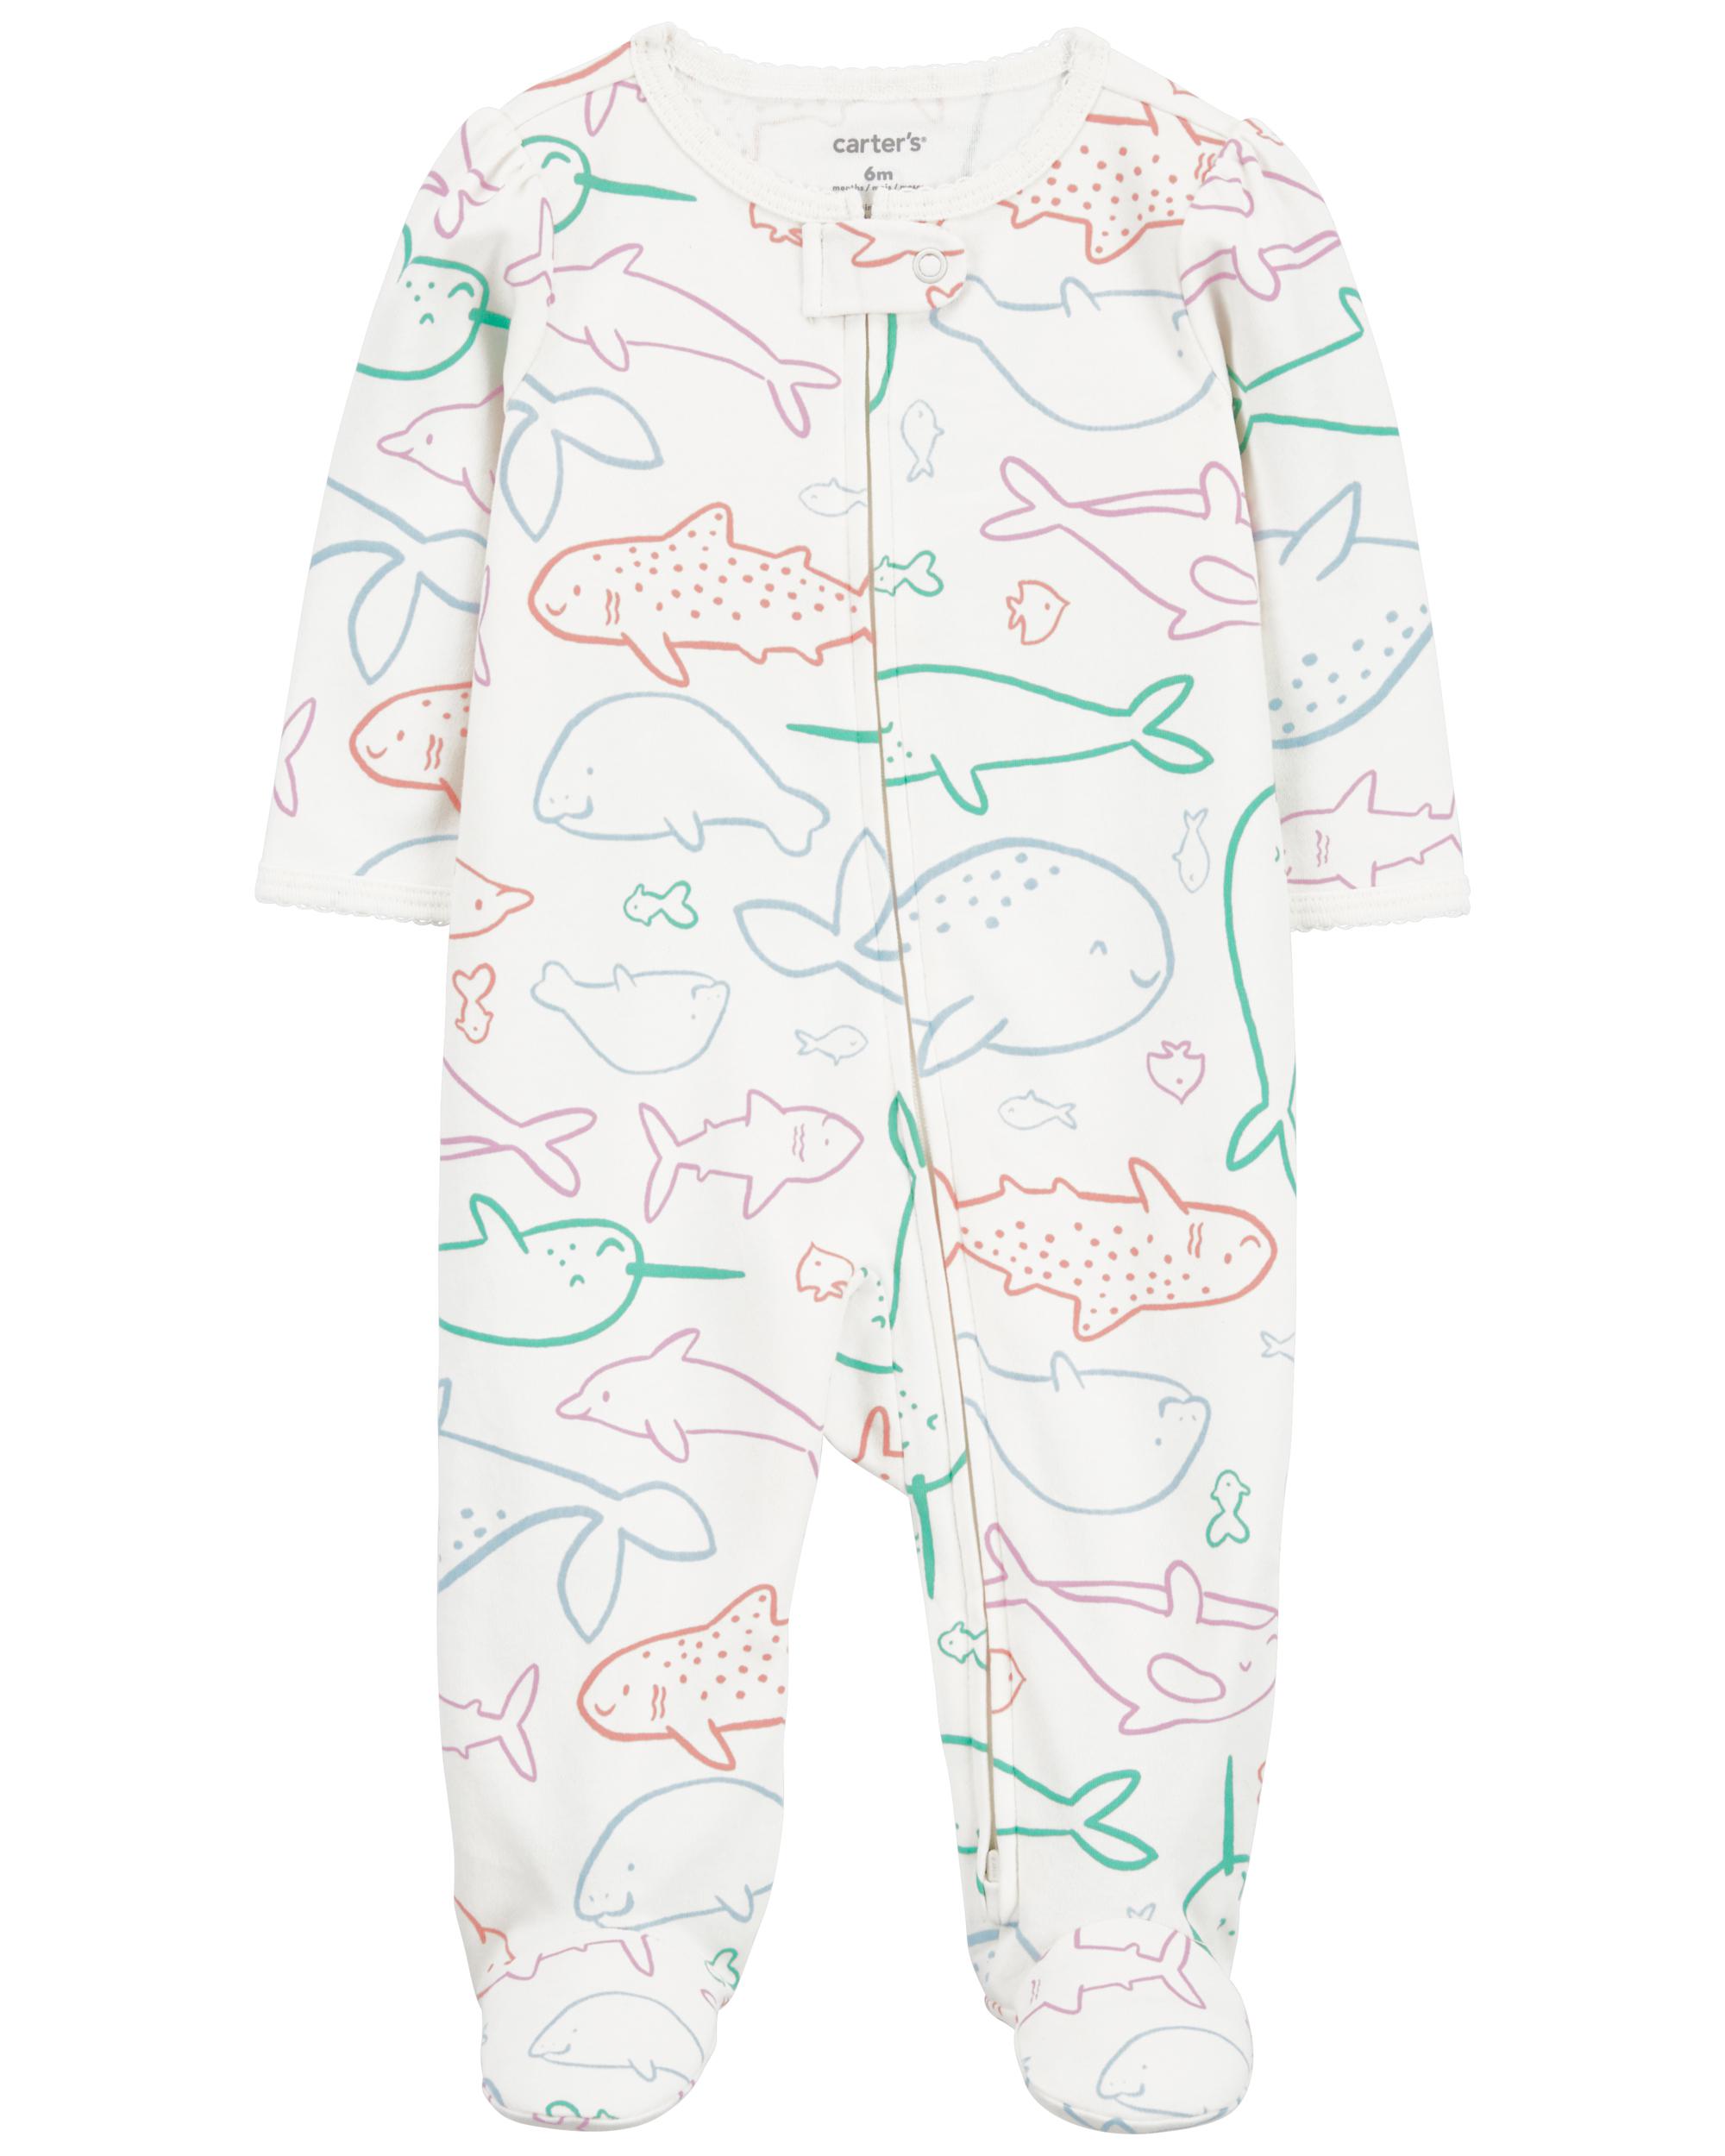 Whale Zip-Up Sleeper Pyjamas